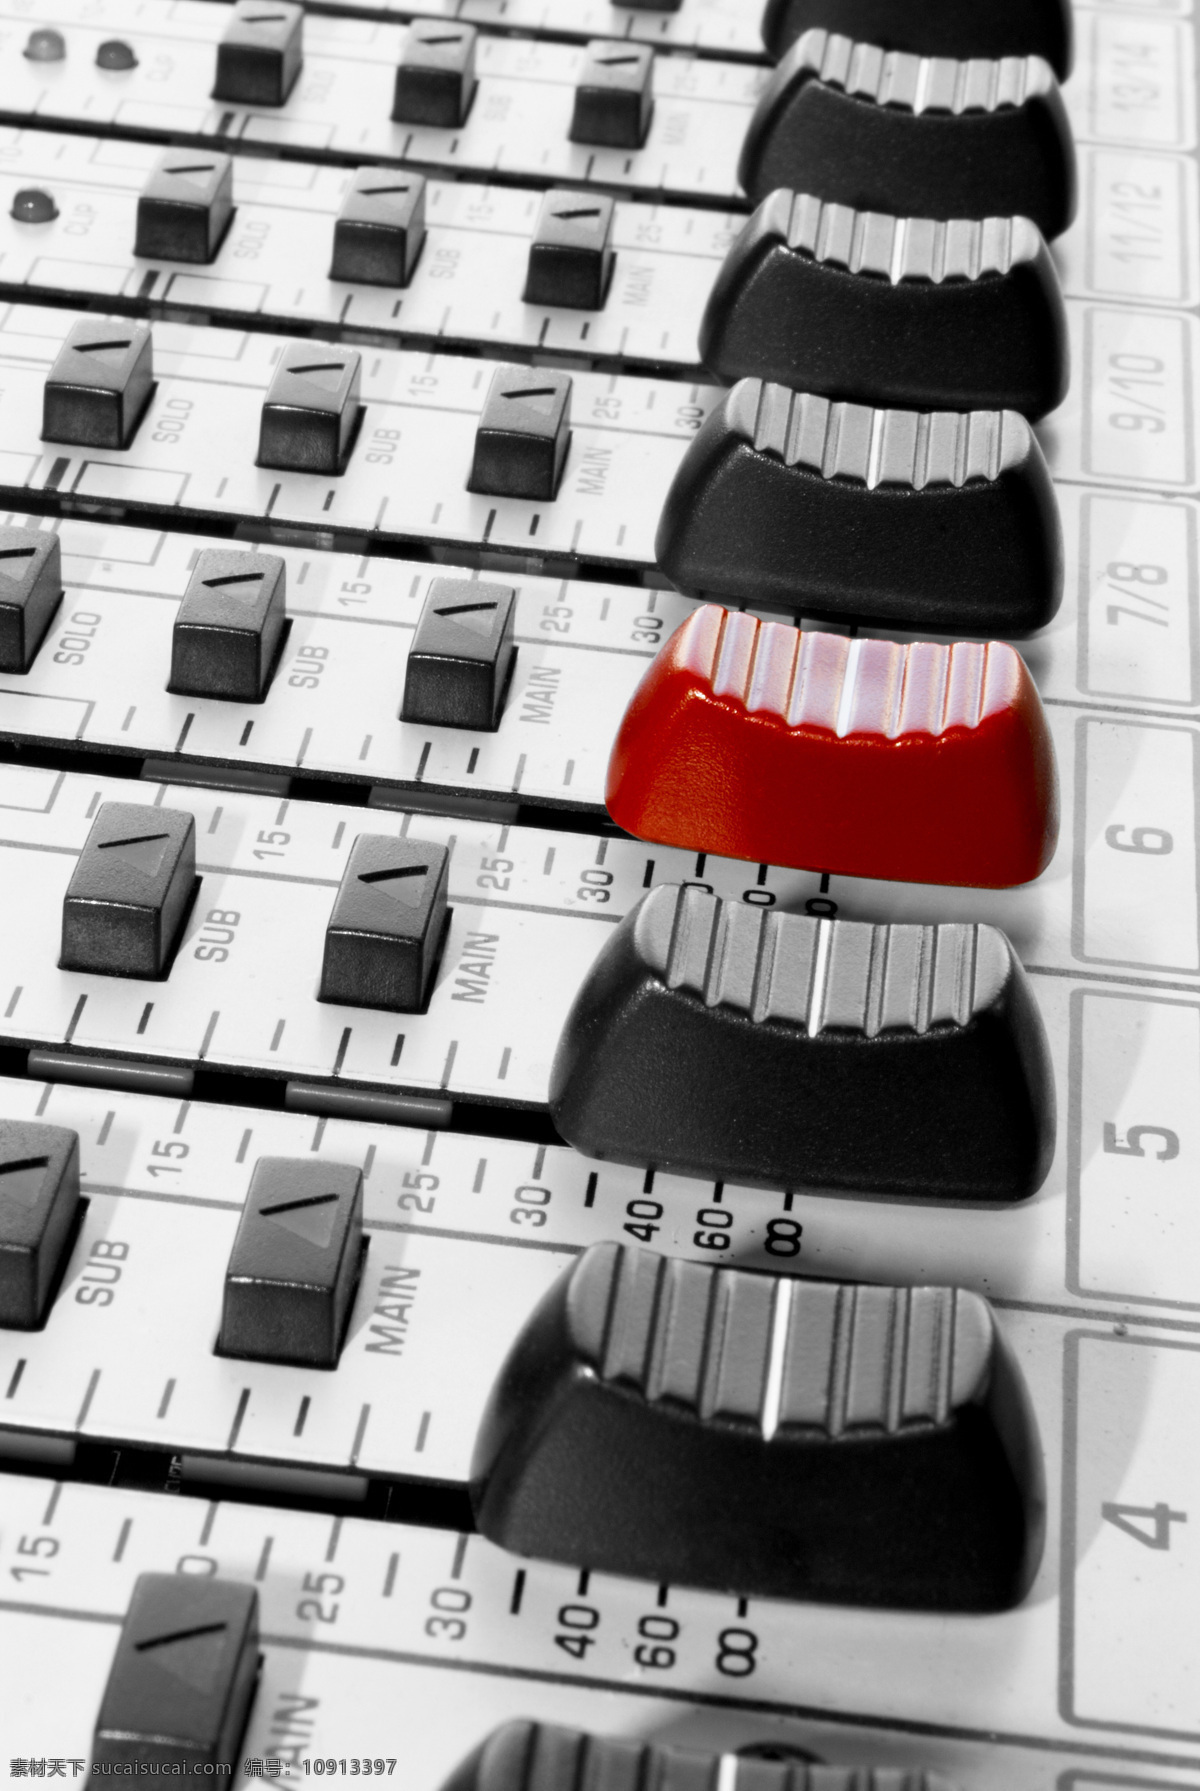 调音台 按钮 录音设备 音乐播放器材 音乐器材 音乐设备 影音娱乐 生活百科 白色